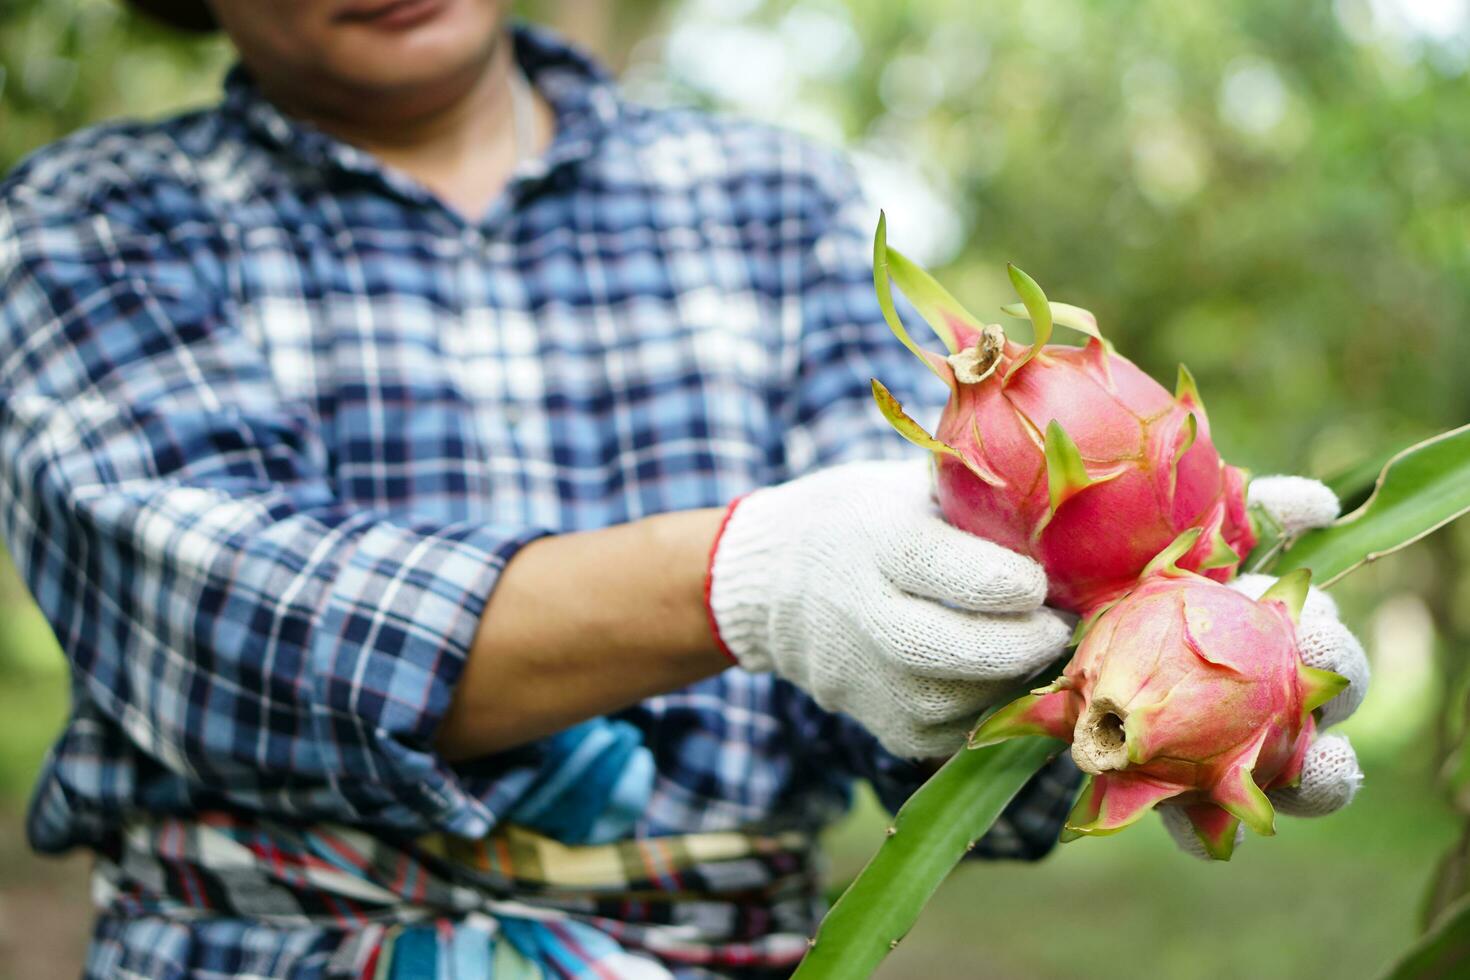 stänga upp jordbrukare händer bär vit handskar, plockning, skörd drake frukt i trädgård. begrepp, lantbruk ockupation. thai jordbrukare växa organisk frukt för äter, delning eller försäljning i gemenskap. foto